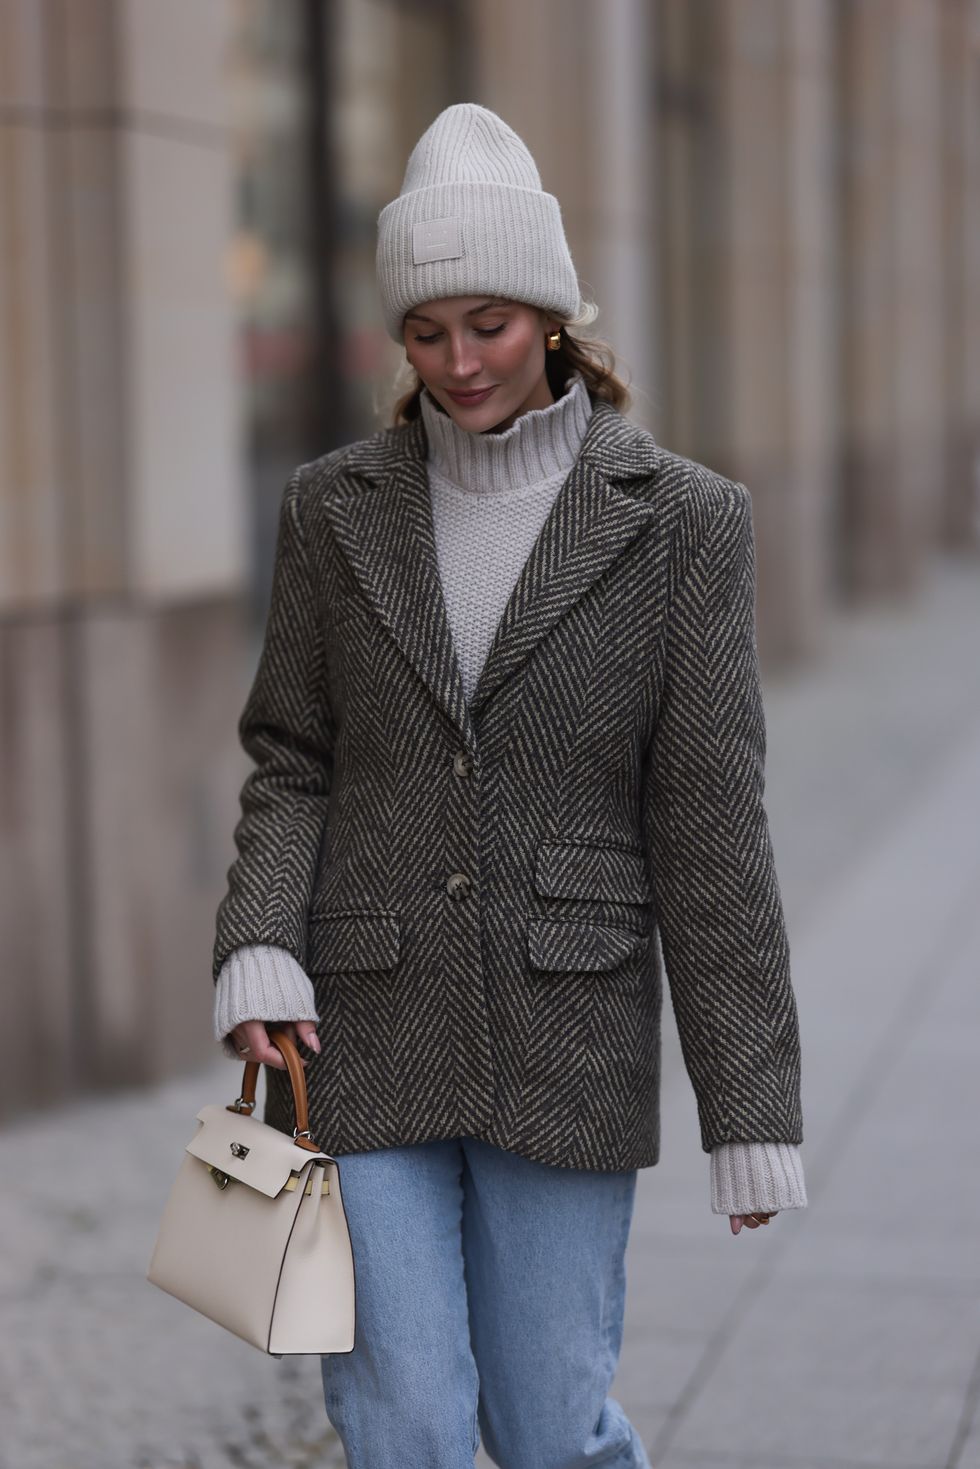 Moda Invierno 2019 Europa  Look com gorro, Looks inverno feminino